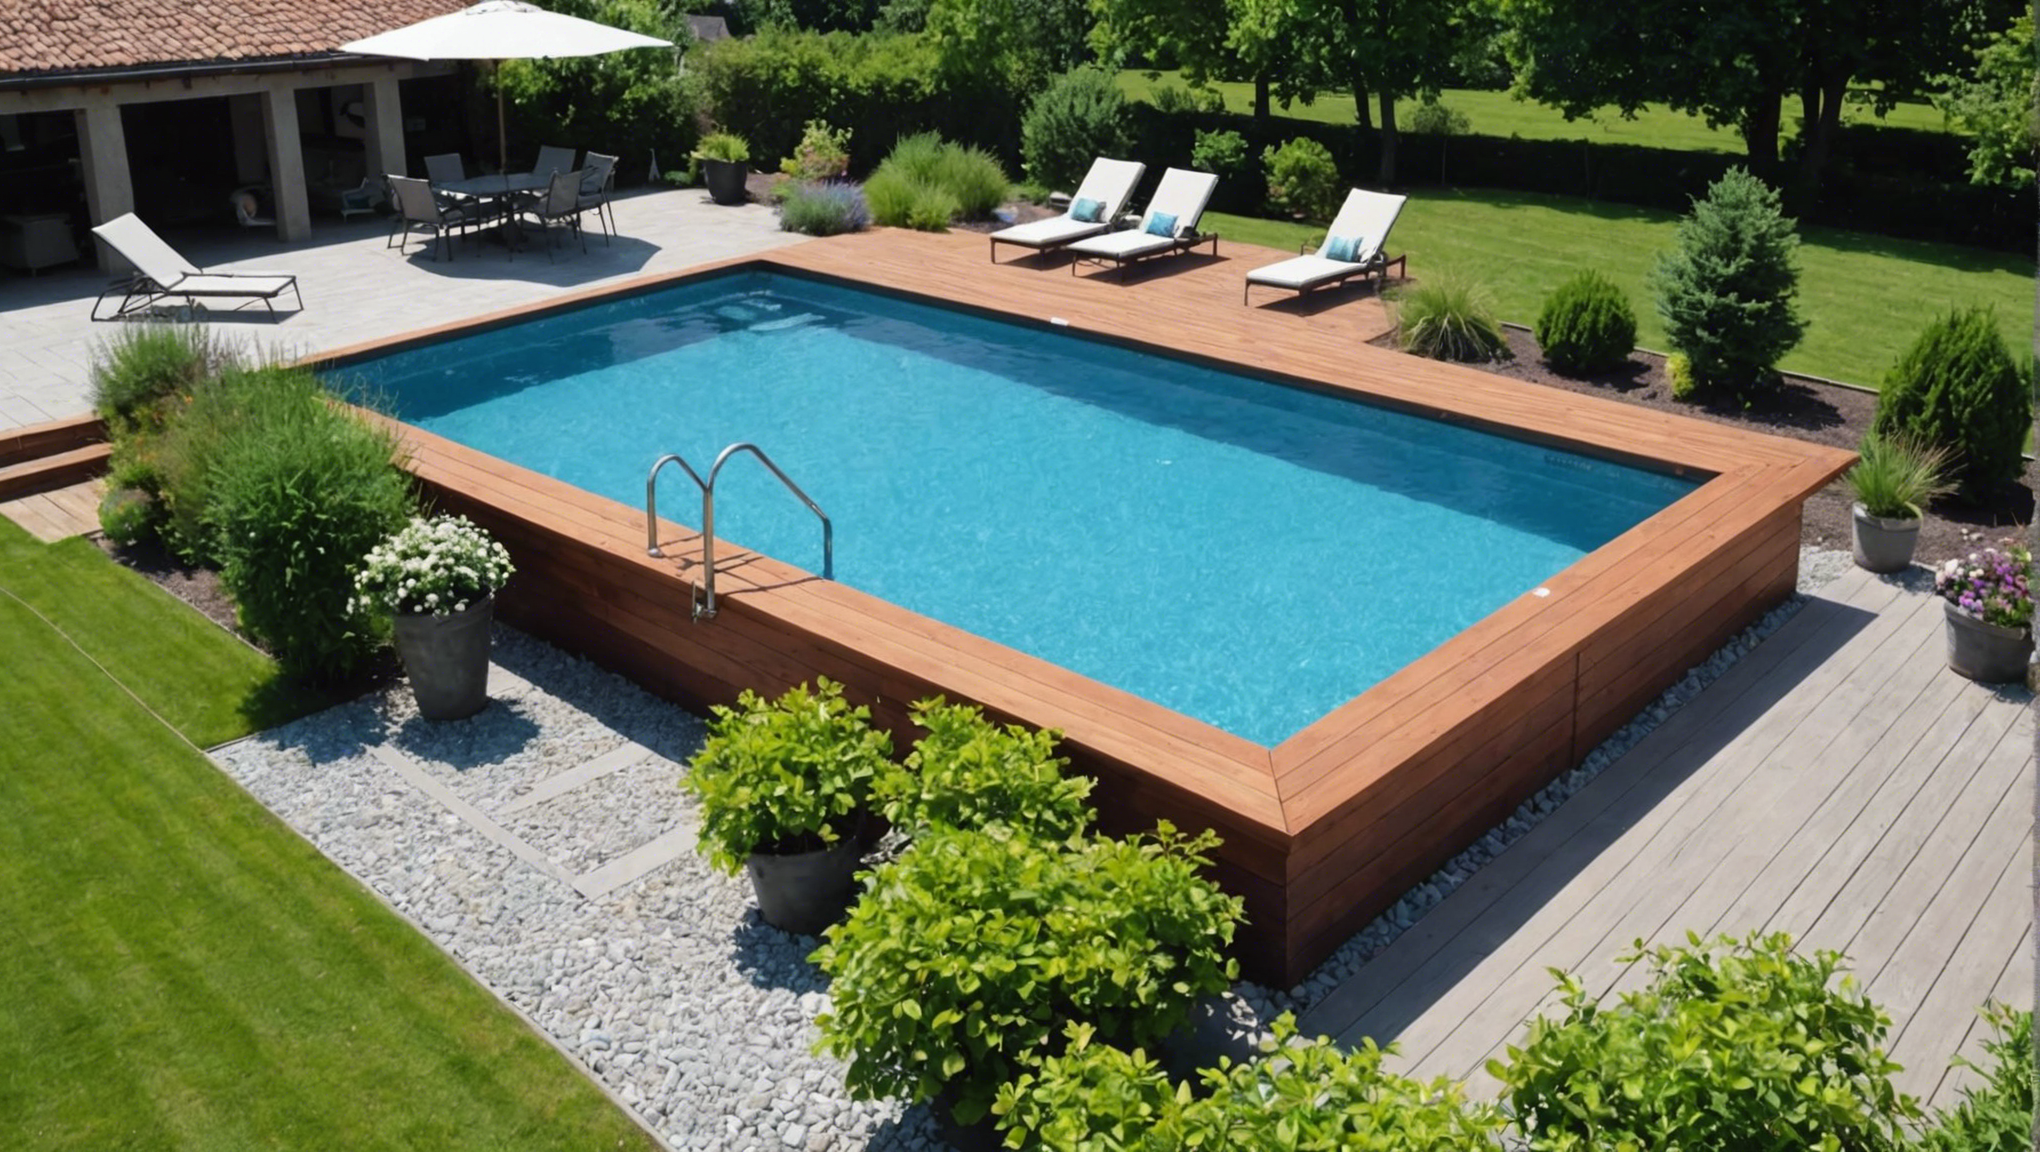 découvrez nos conseils pour réaliser un aménagement paysager harmonieux autour de votre piscine et transformer votre espace en un havre de paix.